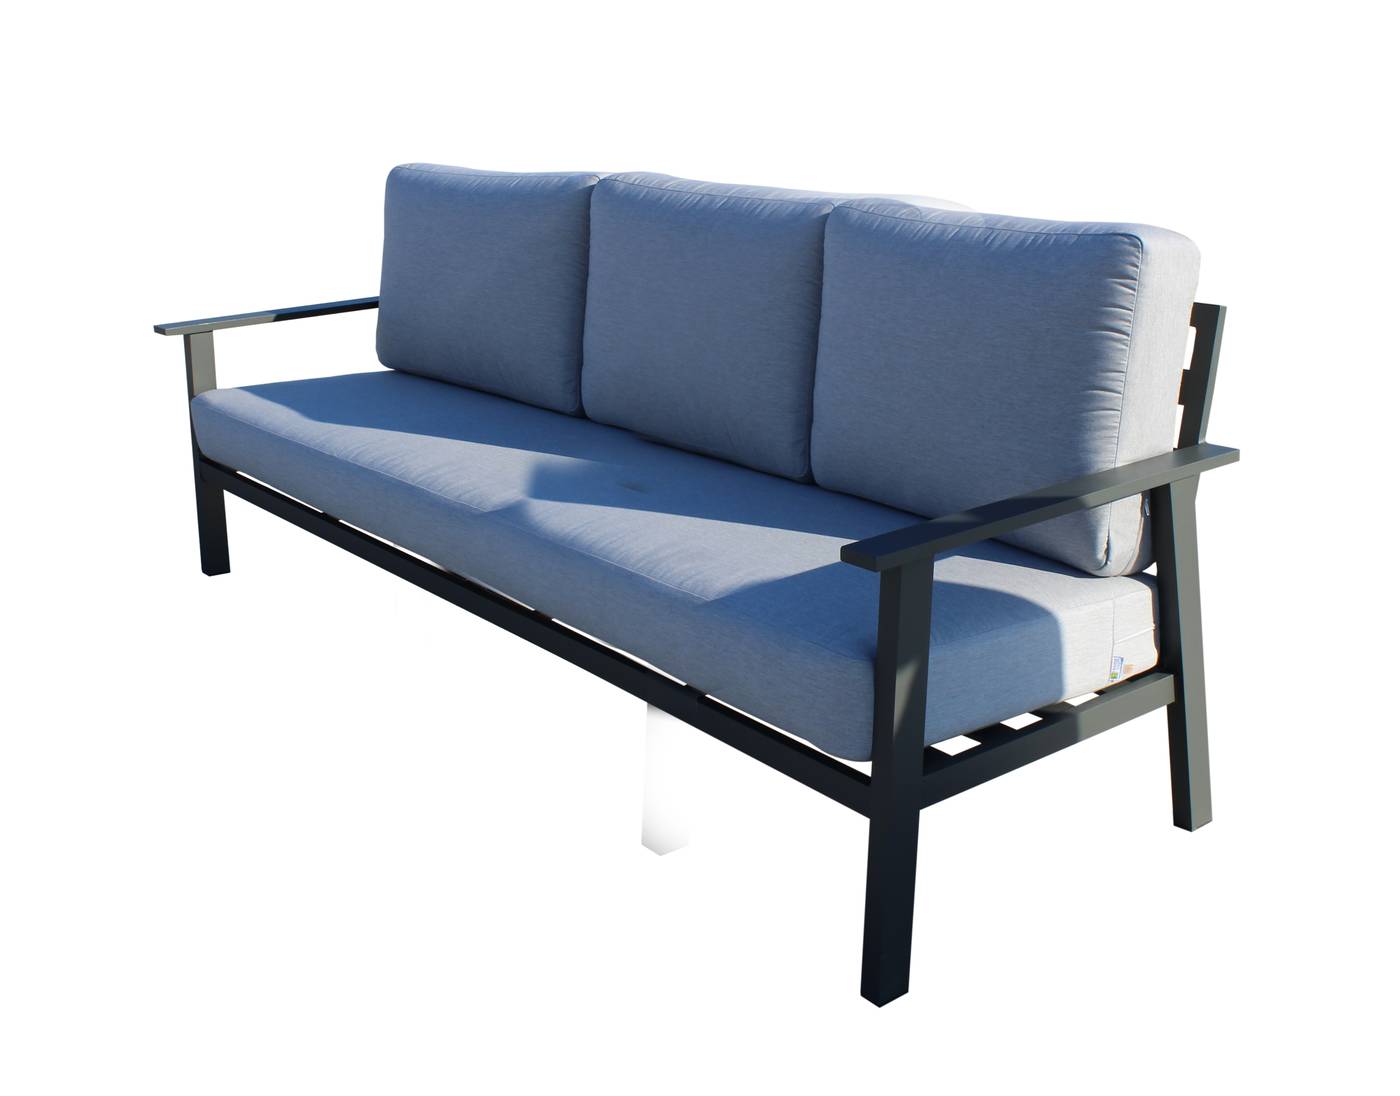 Set Aluminio Eliot-8 - Conjunto aluminio: sofá 3 plazas + 2 sillones + mesa de centro. Fabricado de aluminio en color blanco o antracita.